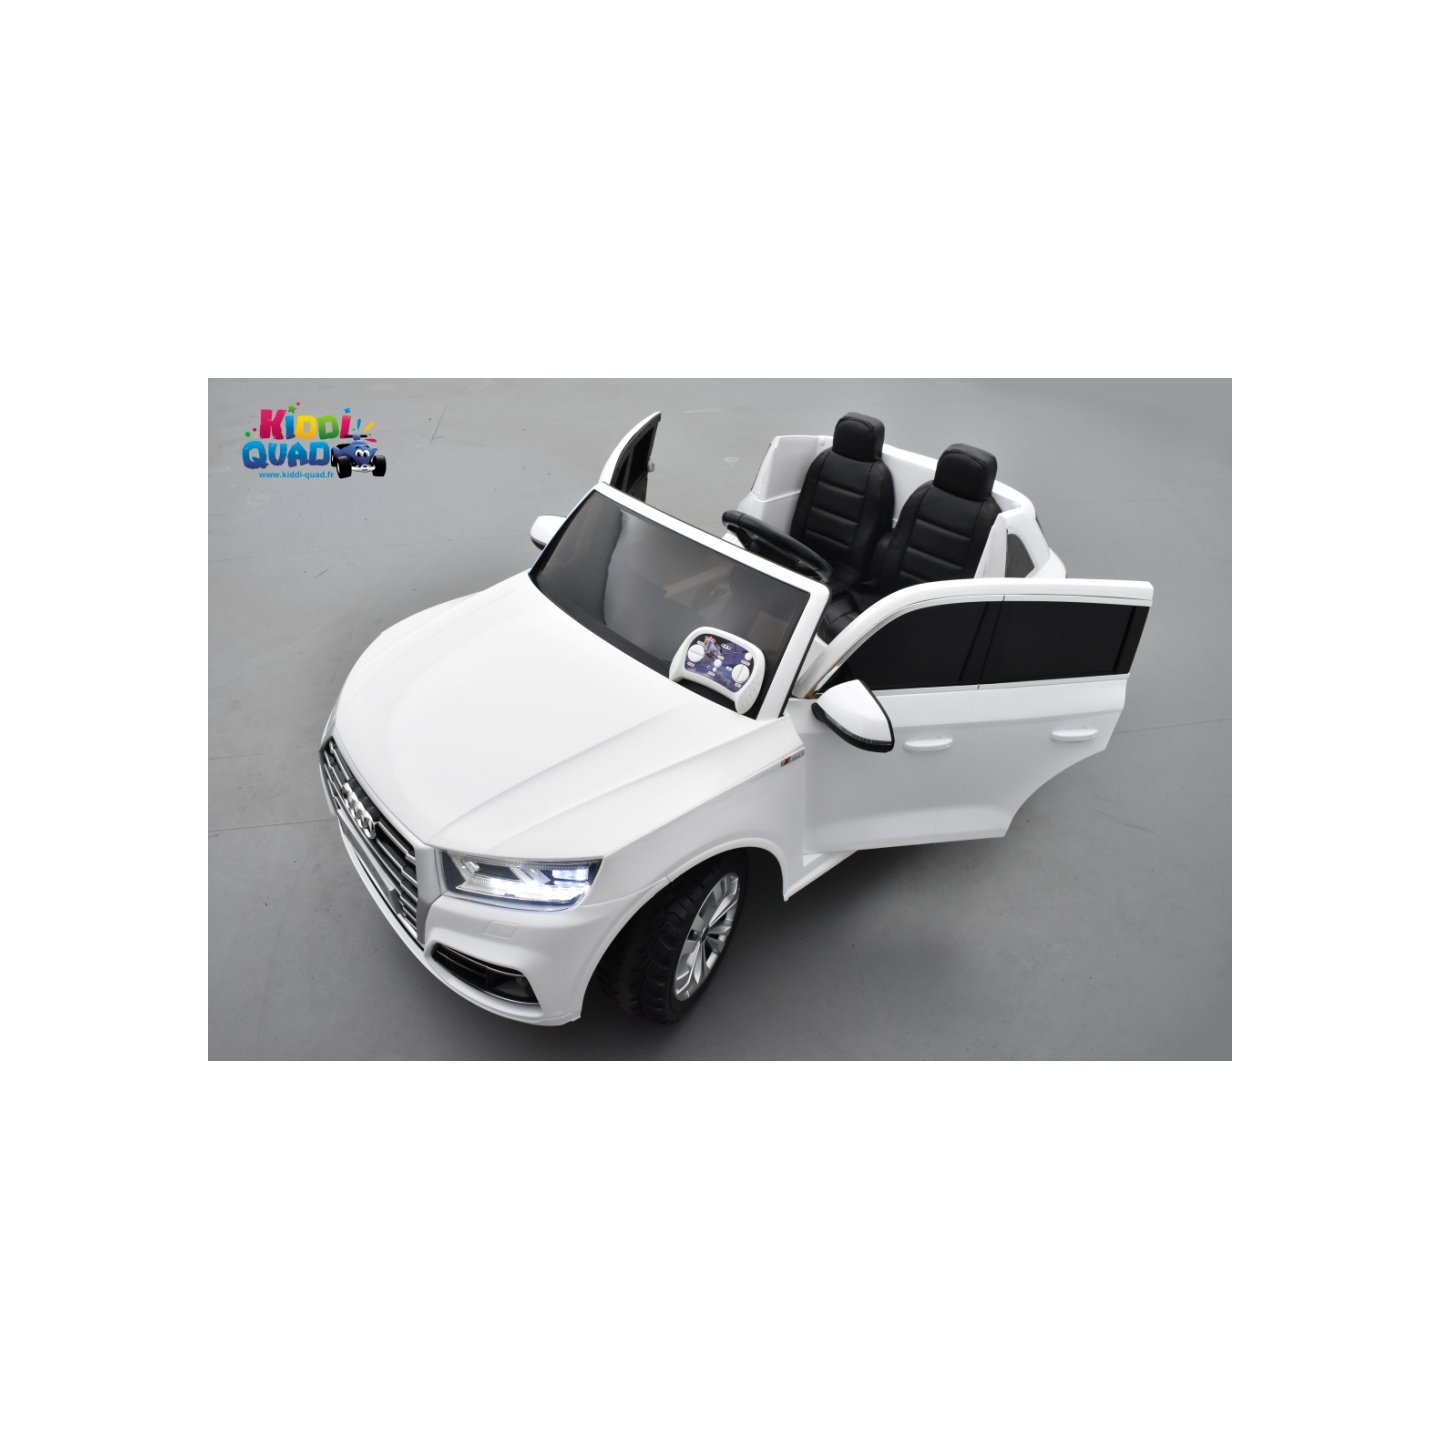 Audi Q5 Tfsi 24 Volts 2 Places Blanc Ibis Voiture Electrique Enfant Telecommande Parentale 2 4 Ghz